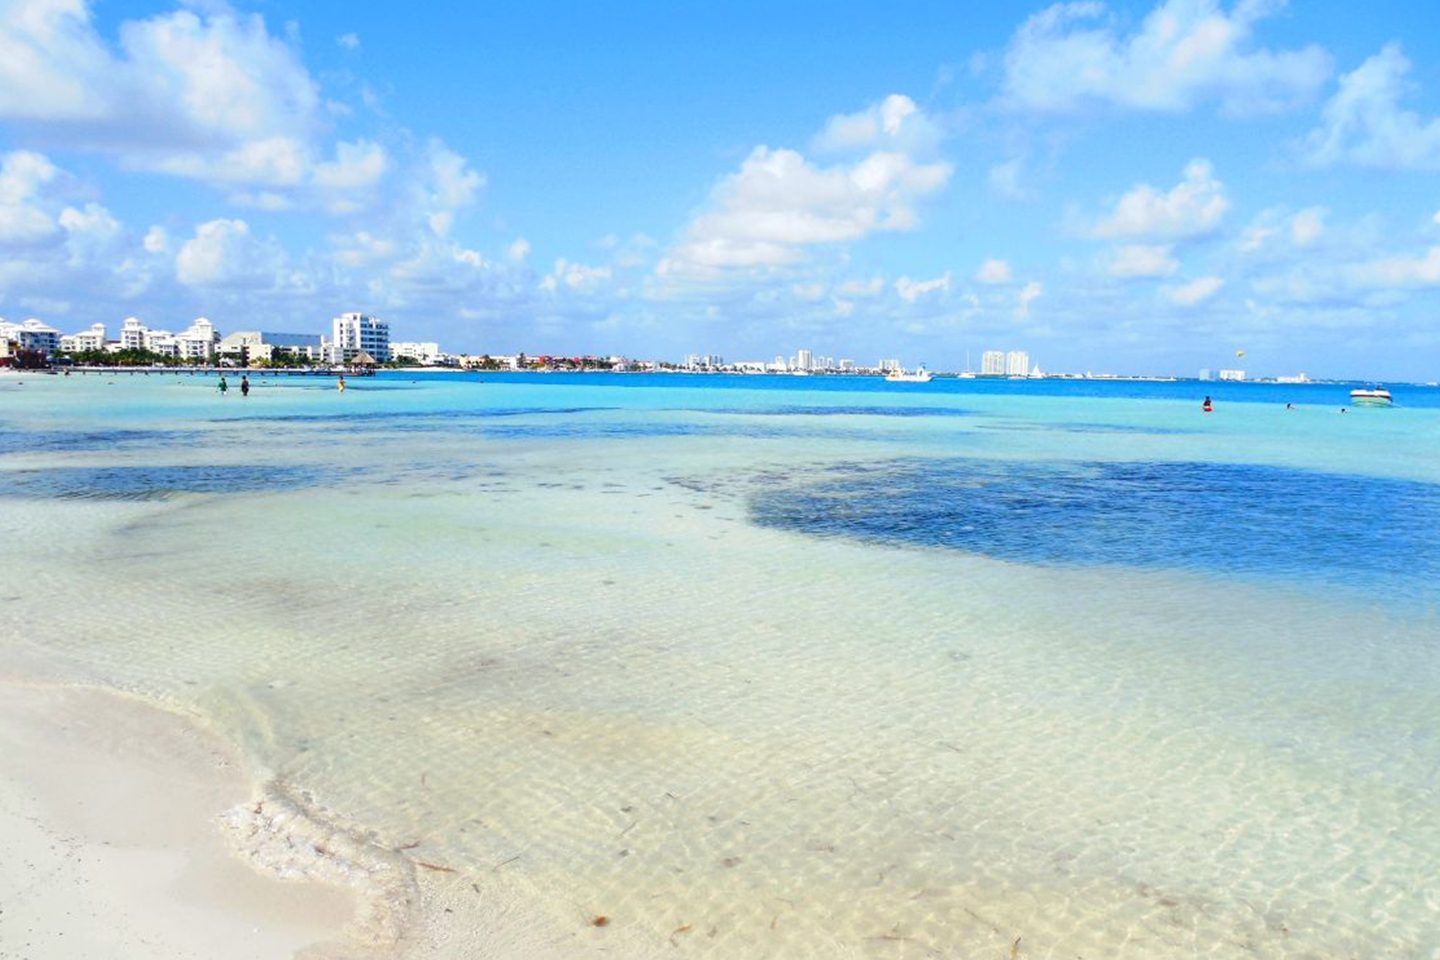 Las playas que se encuentran en todo el Caribe Mexicano son un paraíso y seguros estamos de que disfrutarás de cualquiera de ellas.